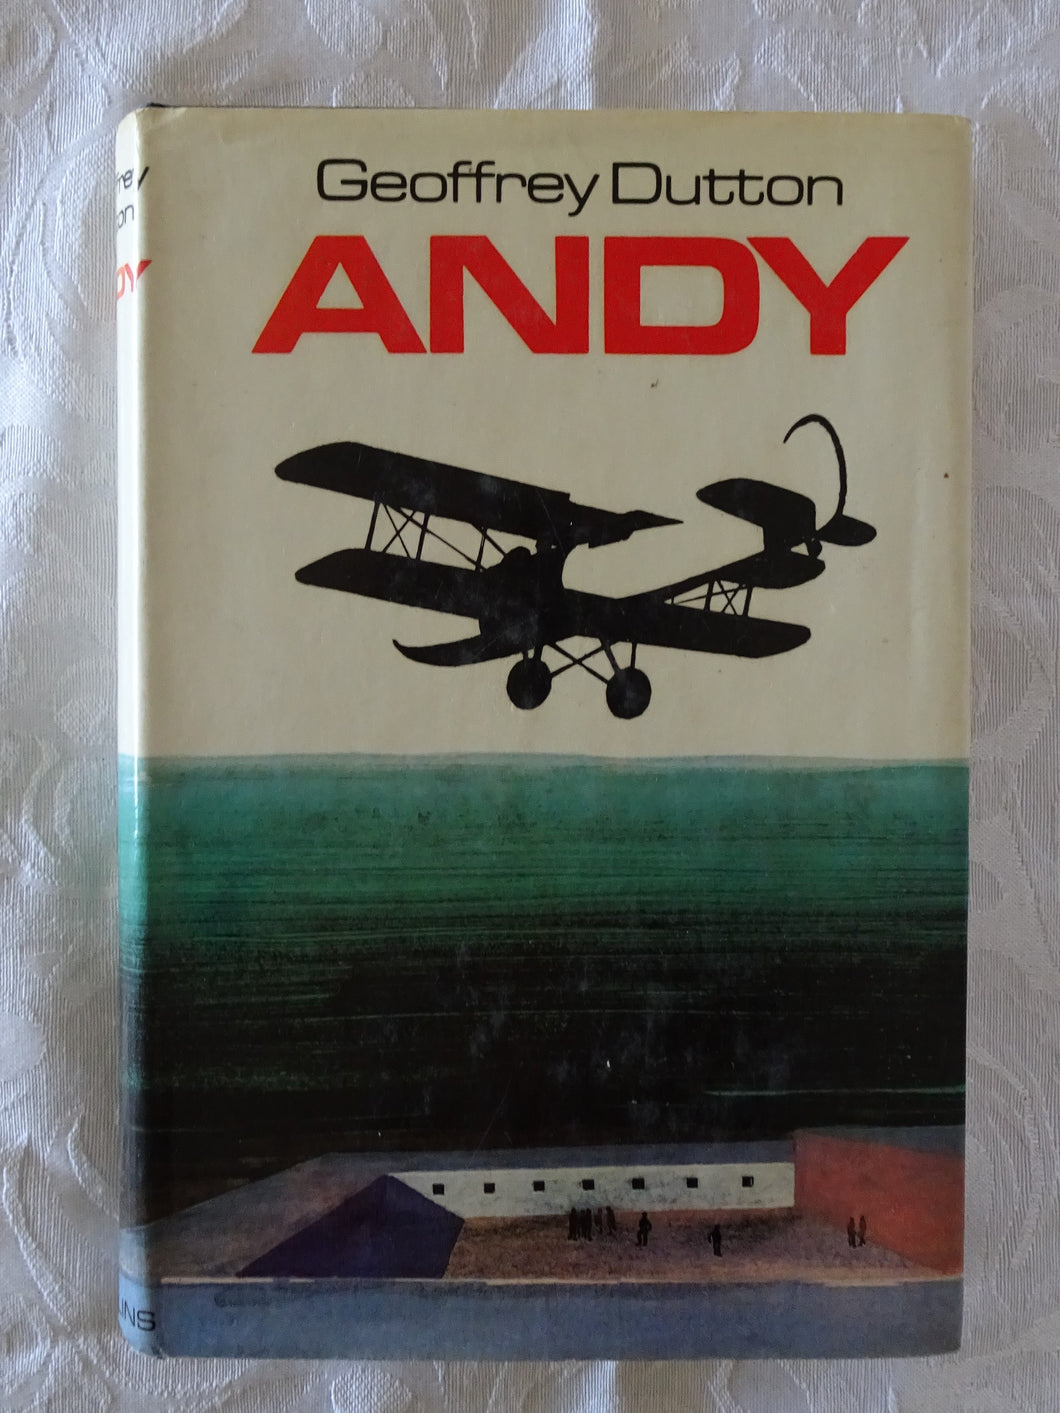 Andy by Geoffrey Dutton